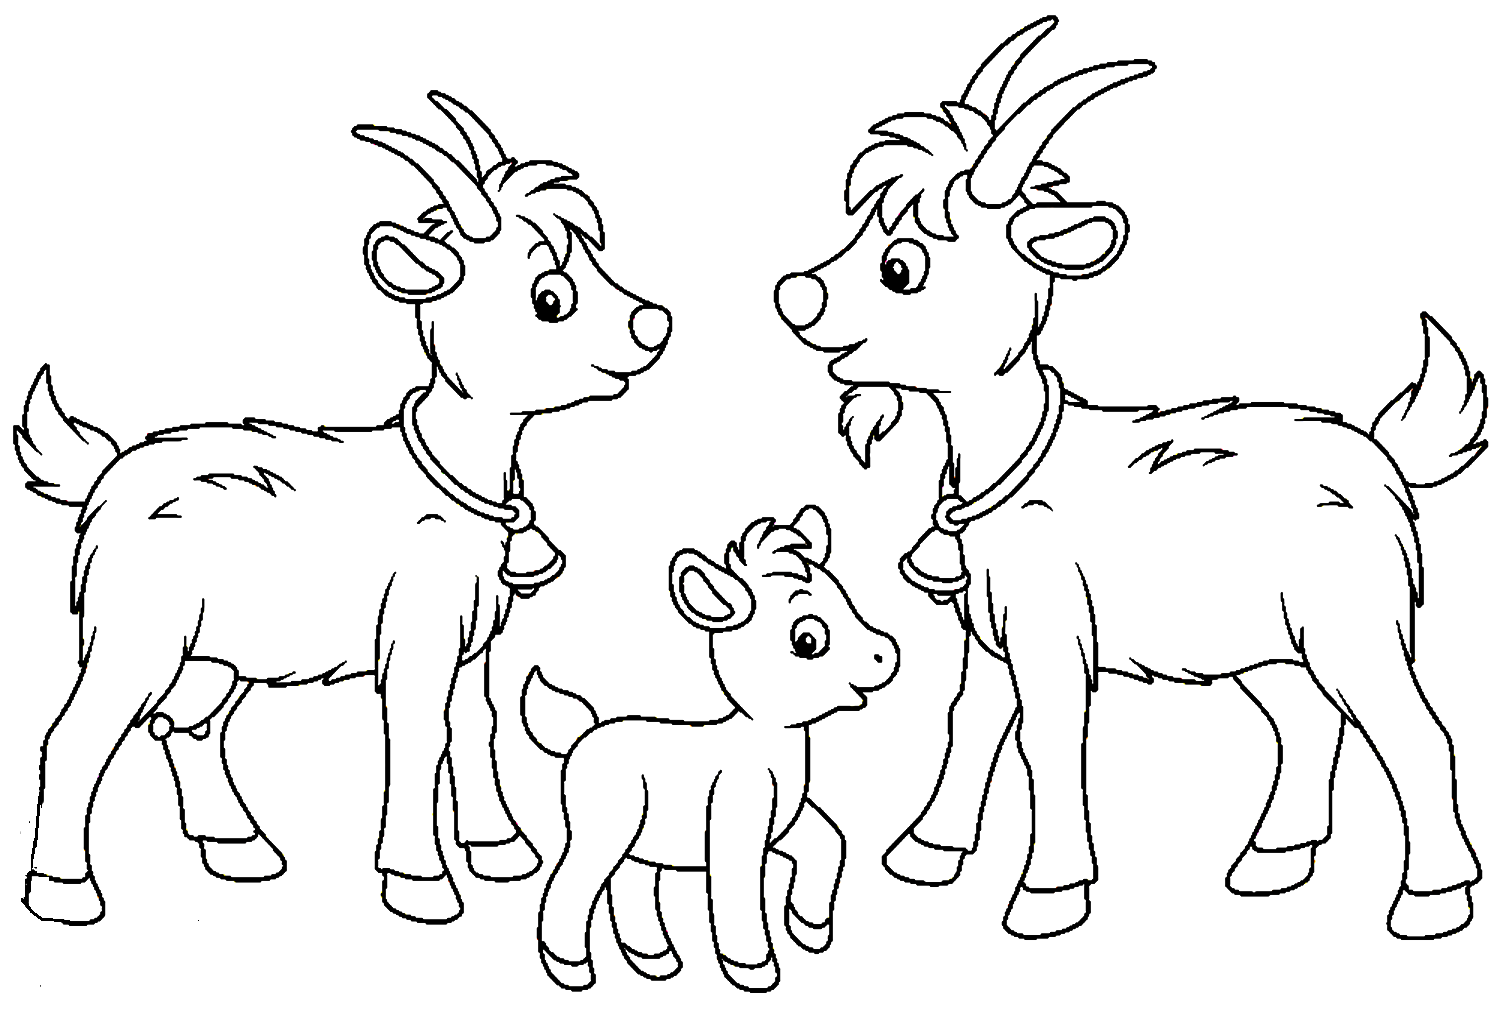 Козленок на английском. Коза козел козленок семья. Коза раскраска. Козочка раскраска для детей. Козлик раскраска.